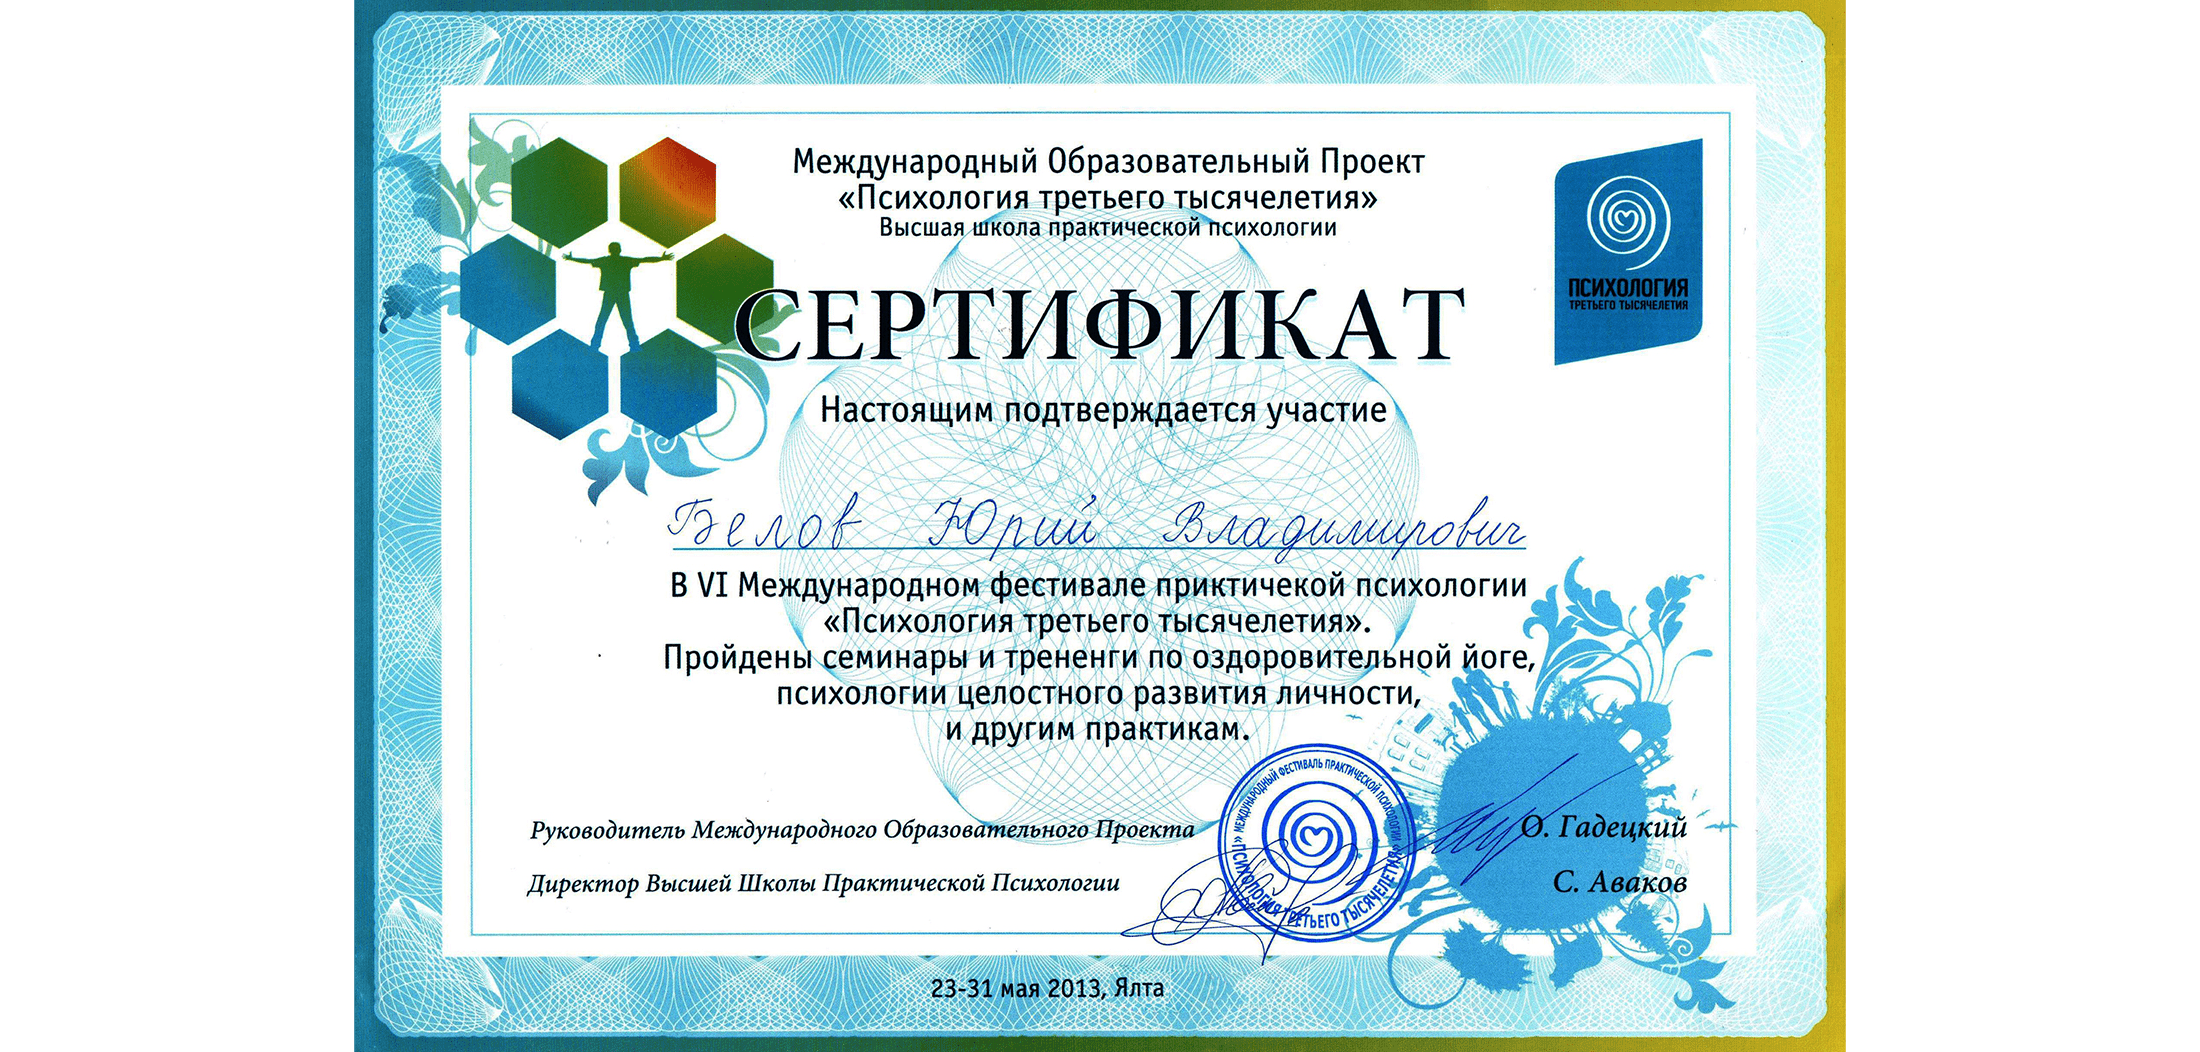 Мой сертификат об участии в 6-й международной конференции психологии